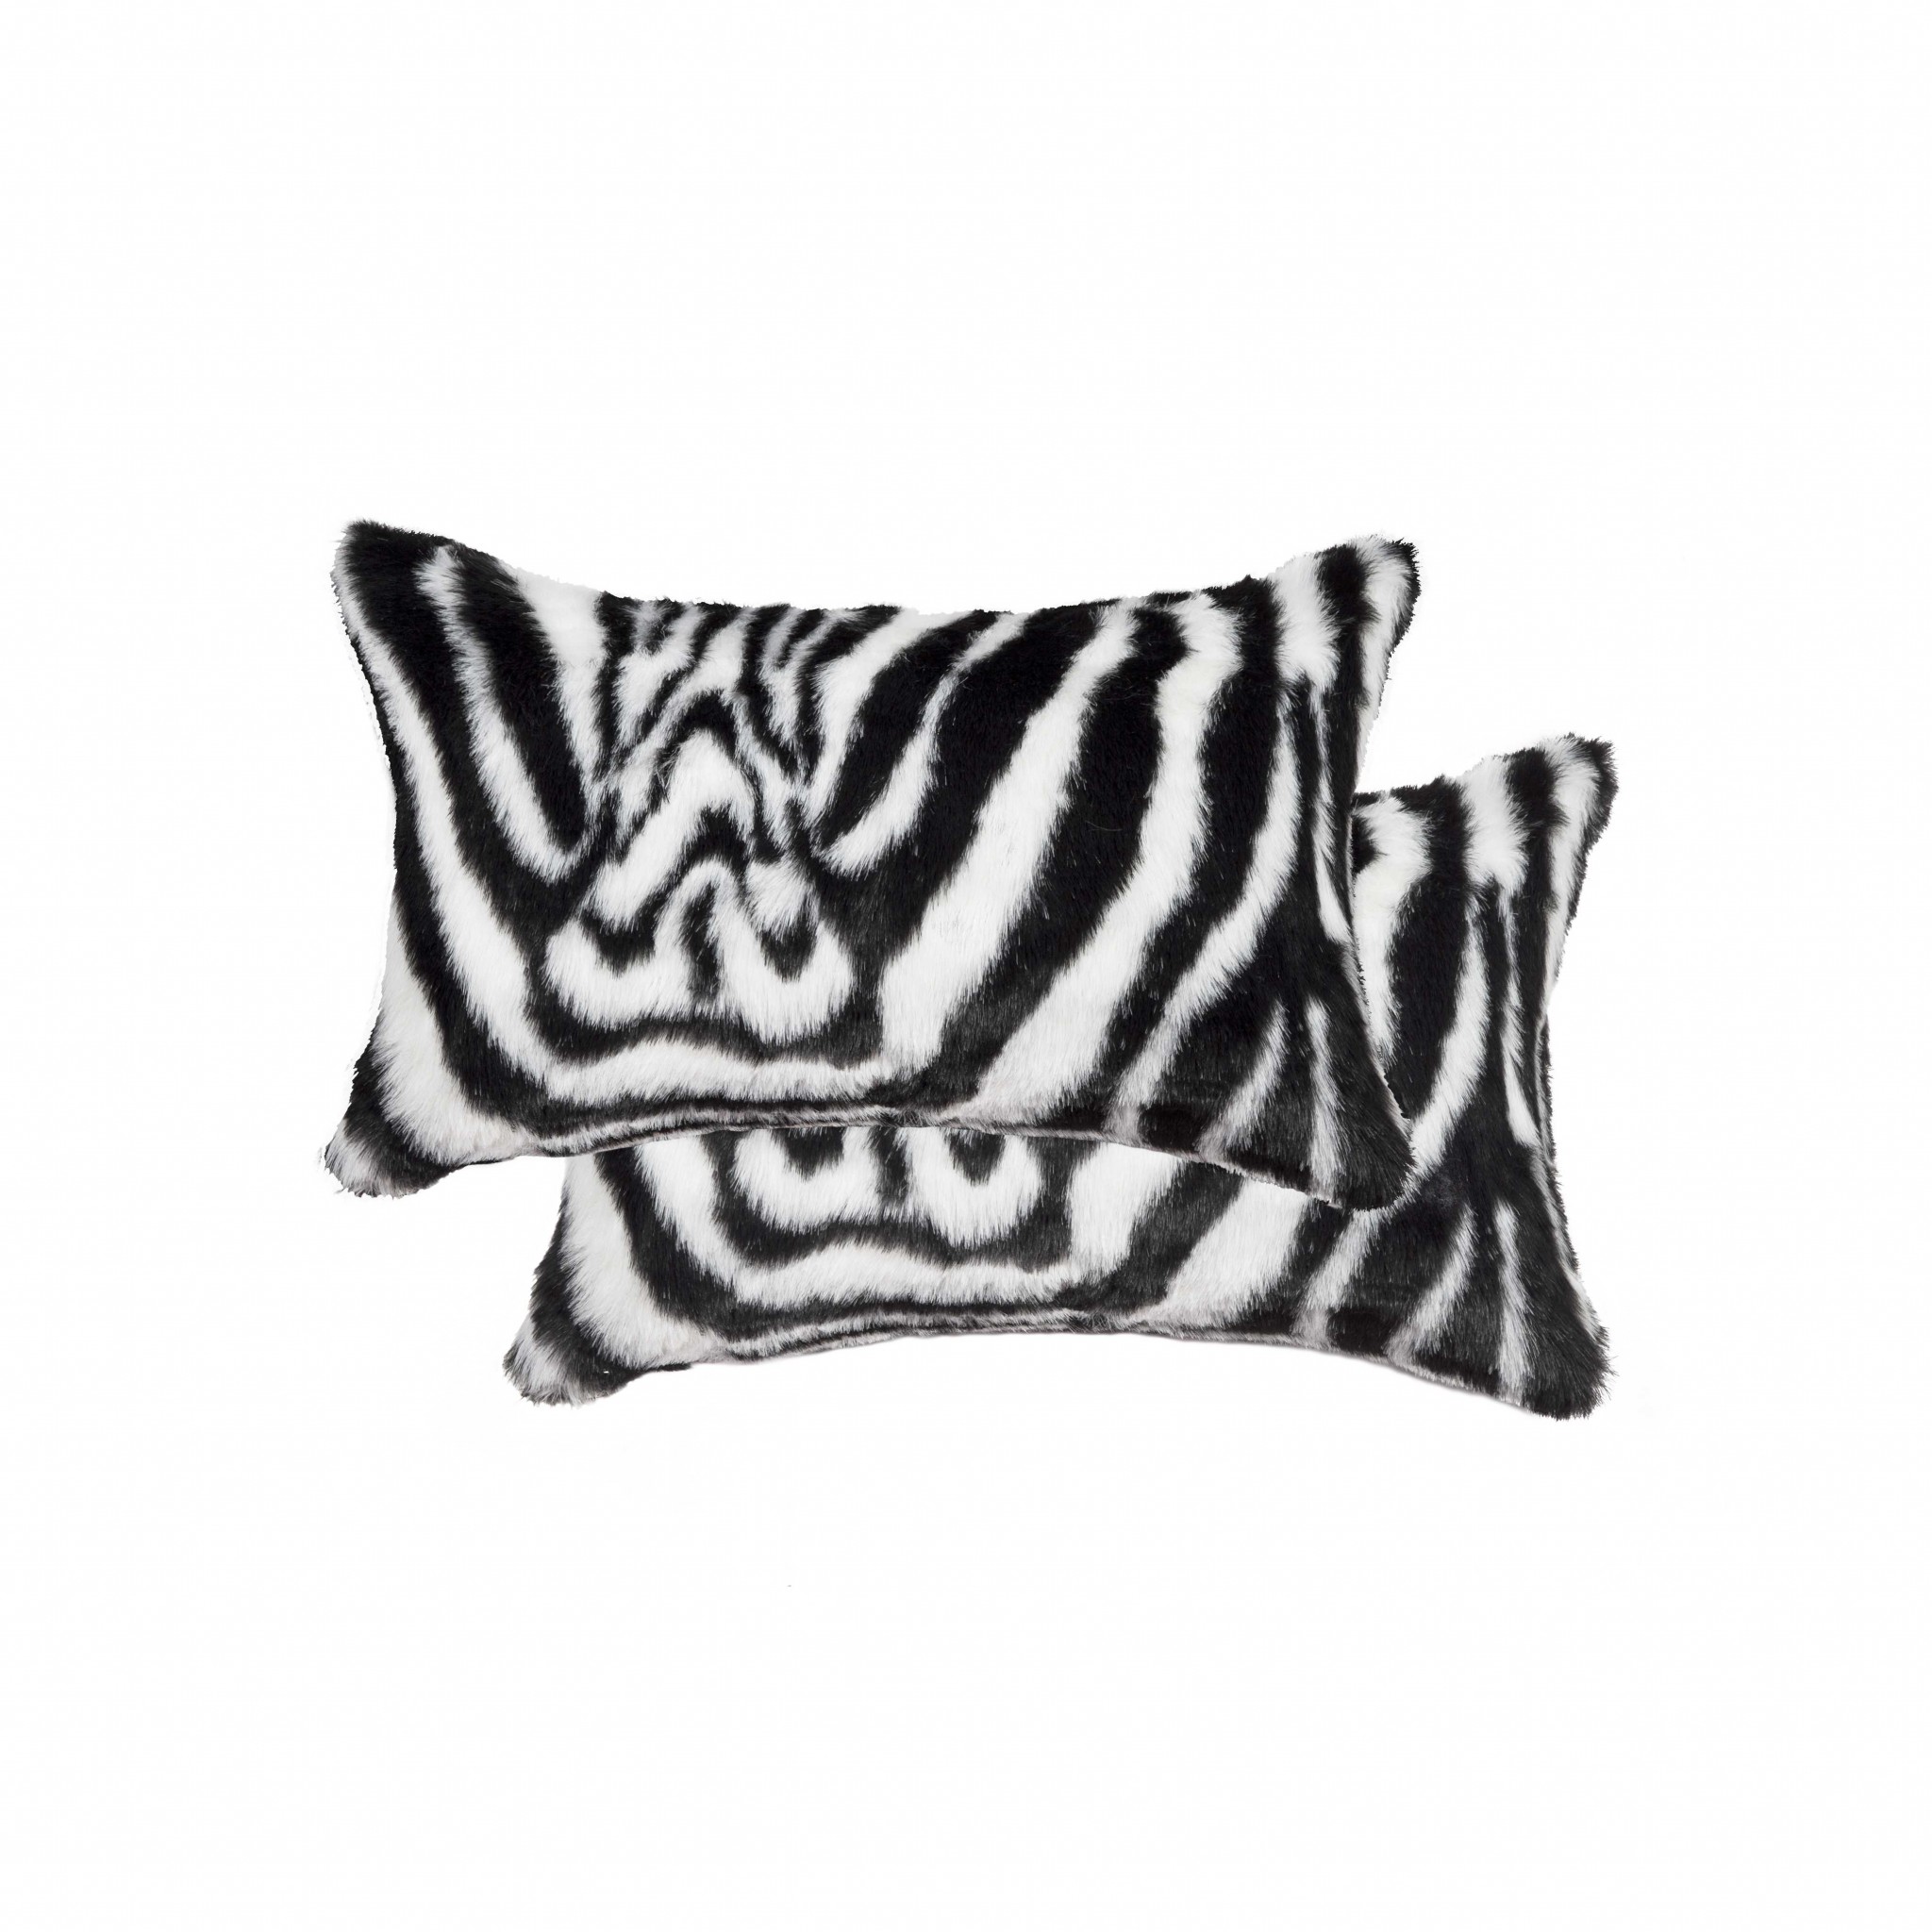 12" x 20" x 5" Denton Zebra Black & White Faux - Pillow 2-Pack